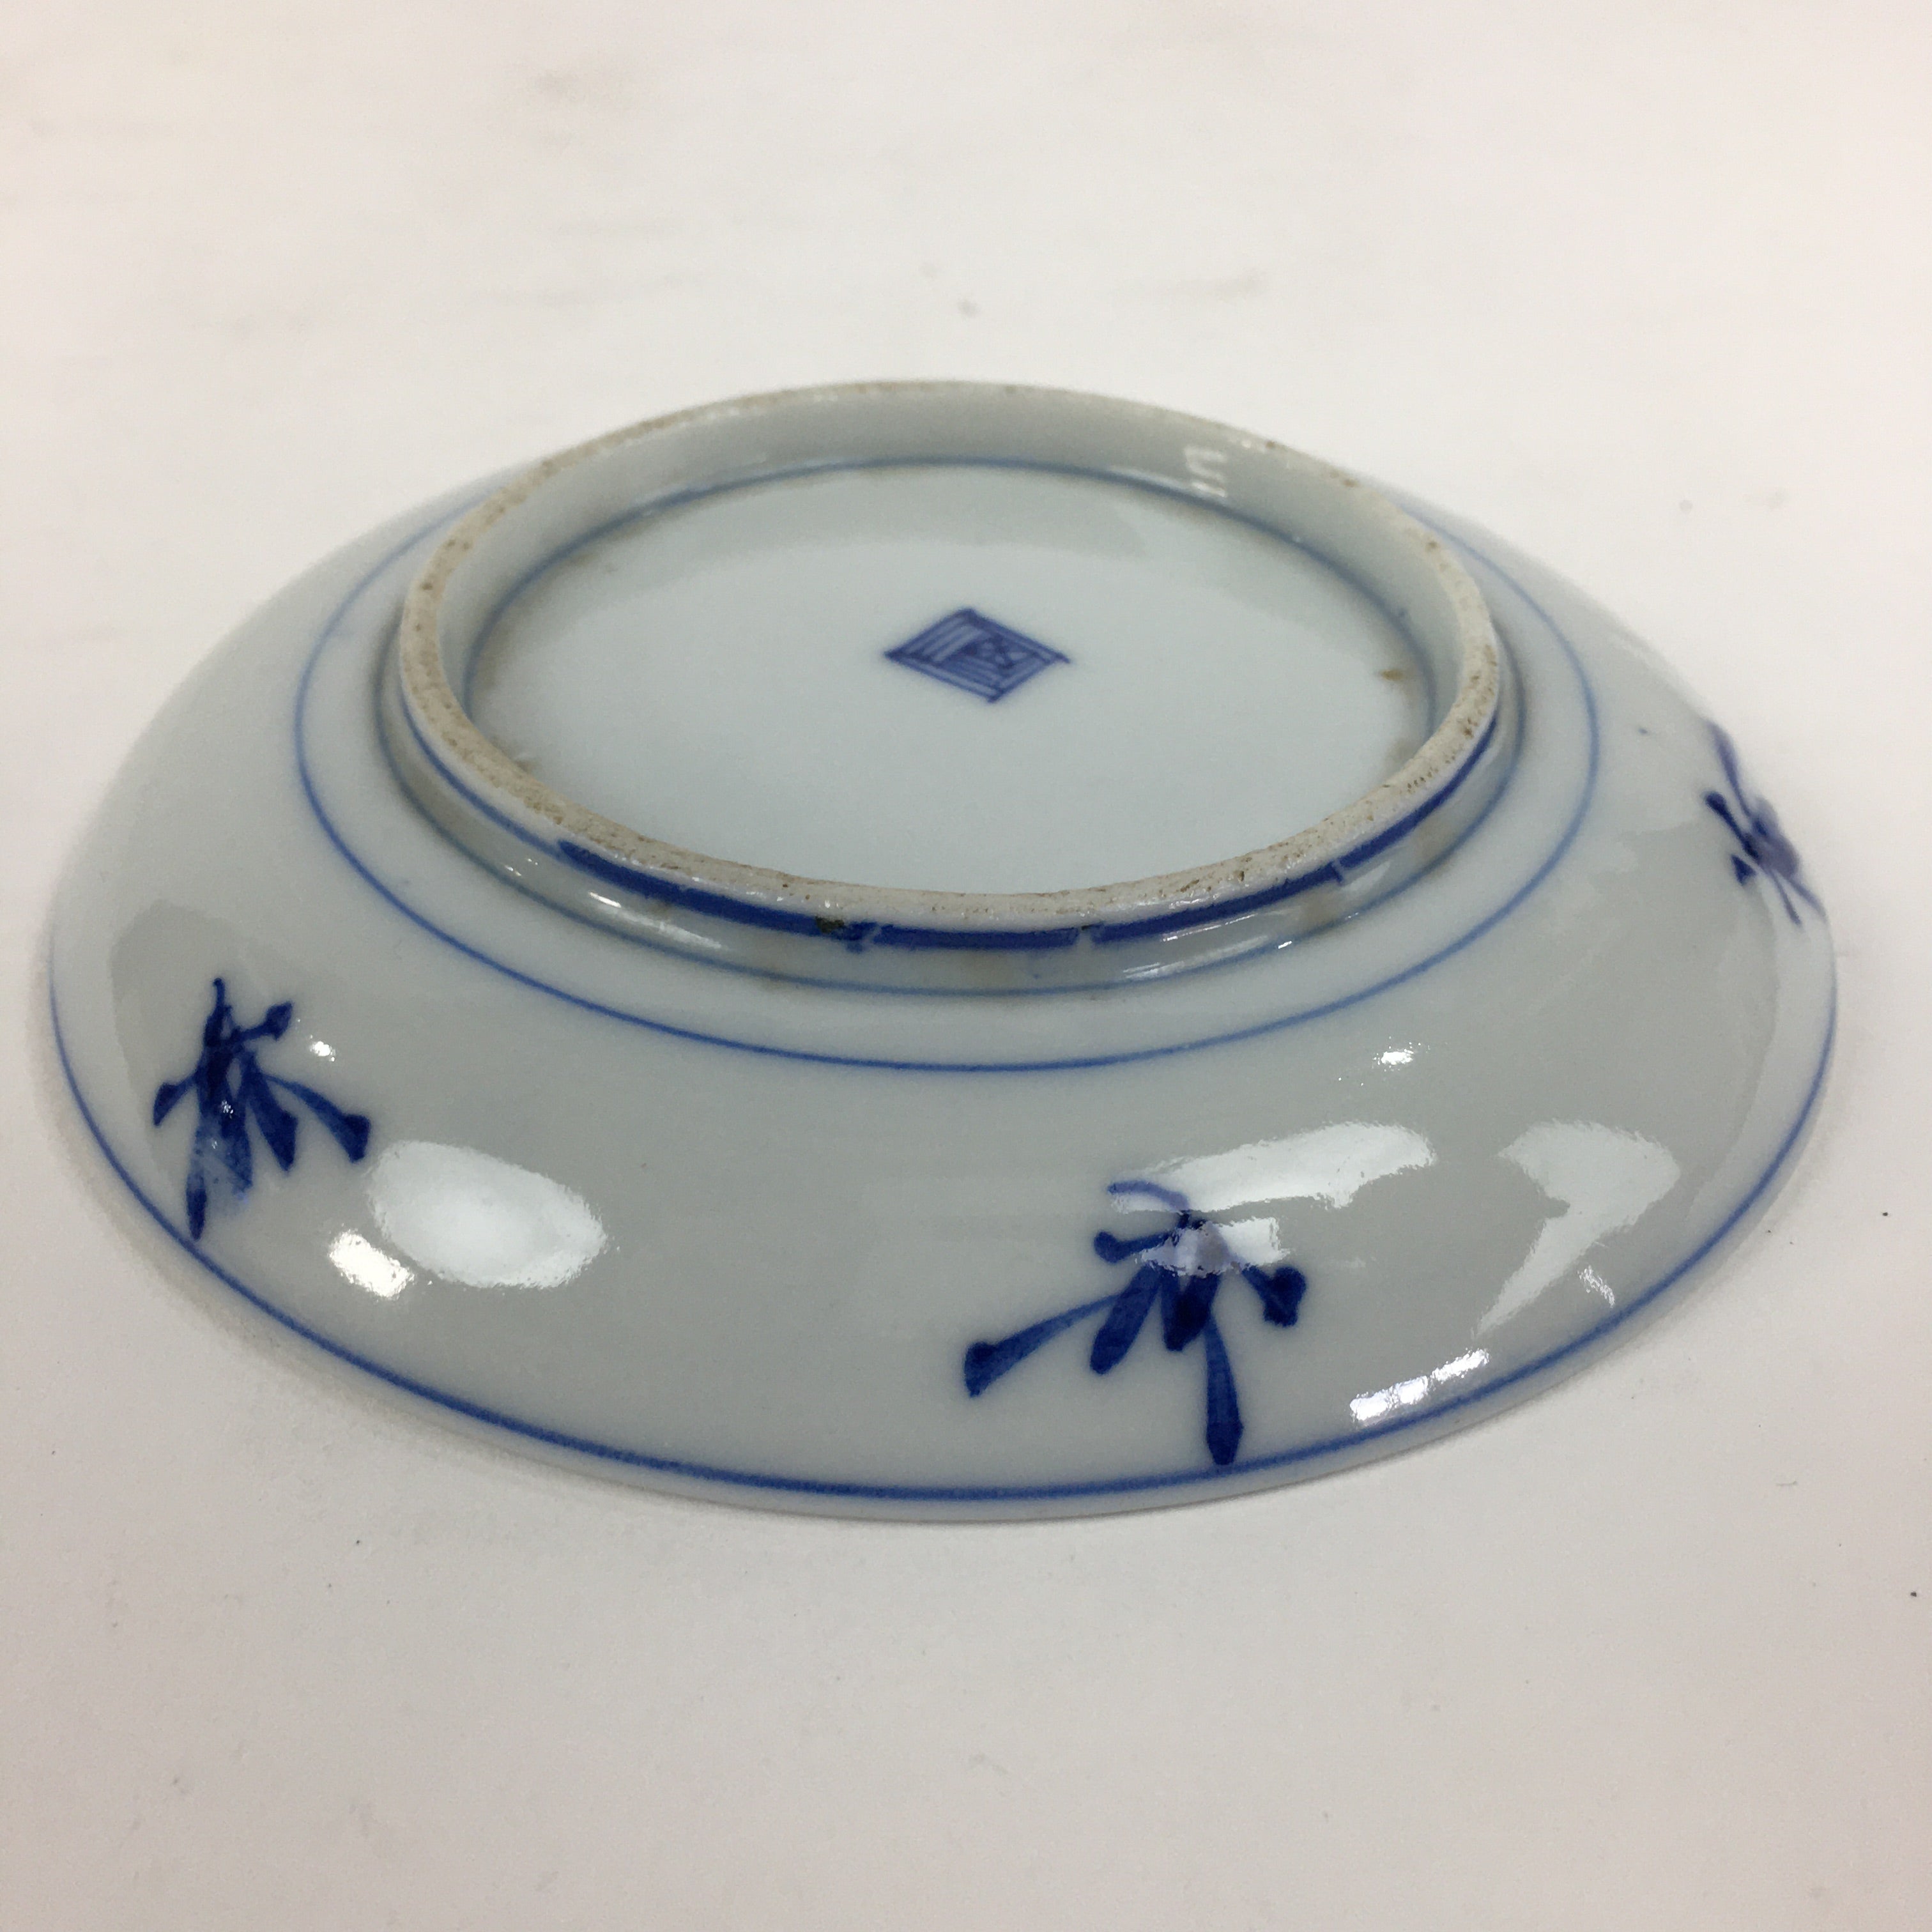 Japanese Porcelain Small Plate Kozara Vtg Blue Flower Dandelion Kozara PP812